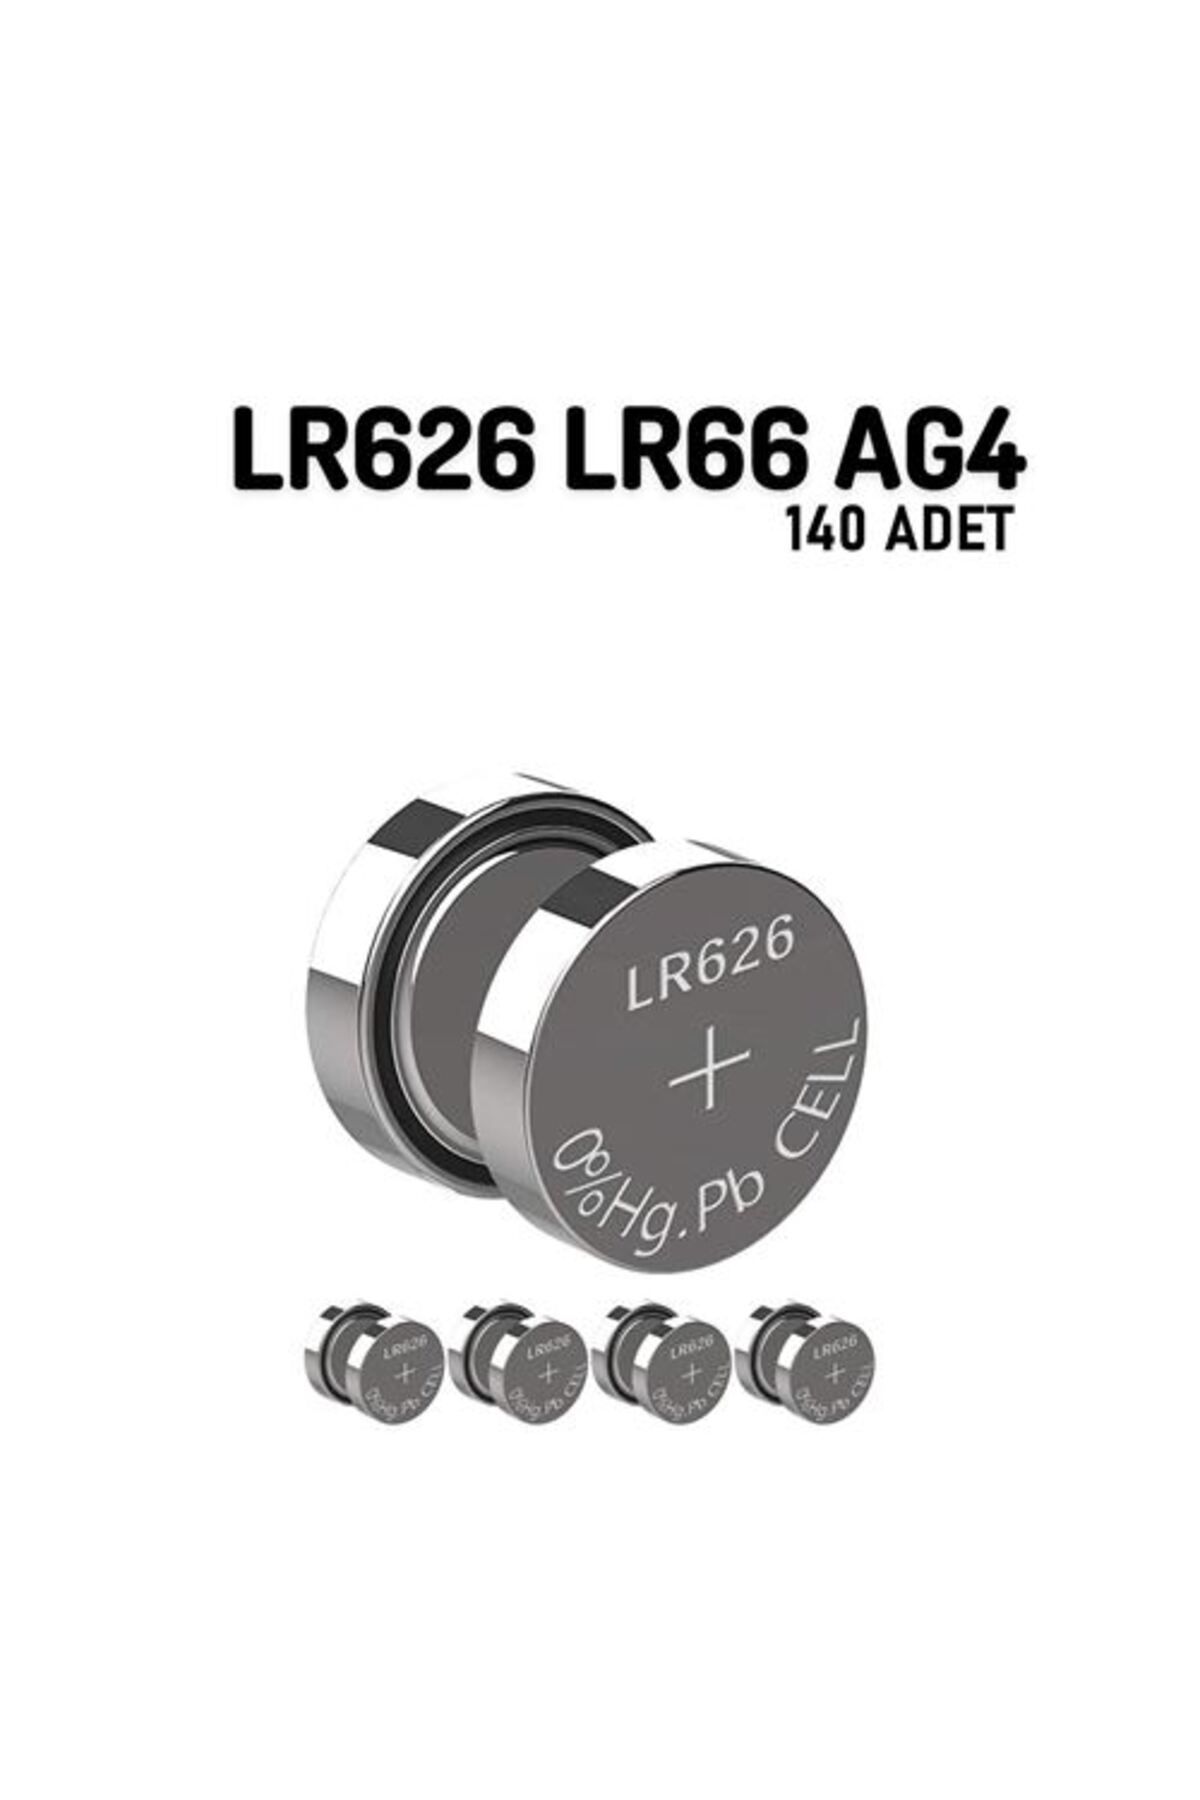 Transformacion 100+40 ADET LR626 LR66 AG4 1.55V 10 Adet Alkaline Pil